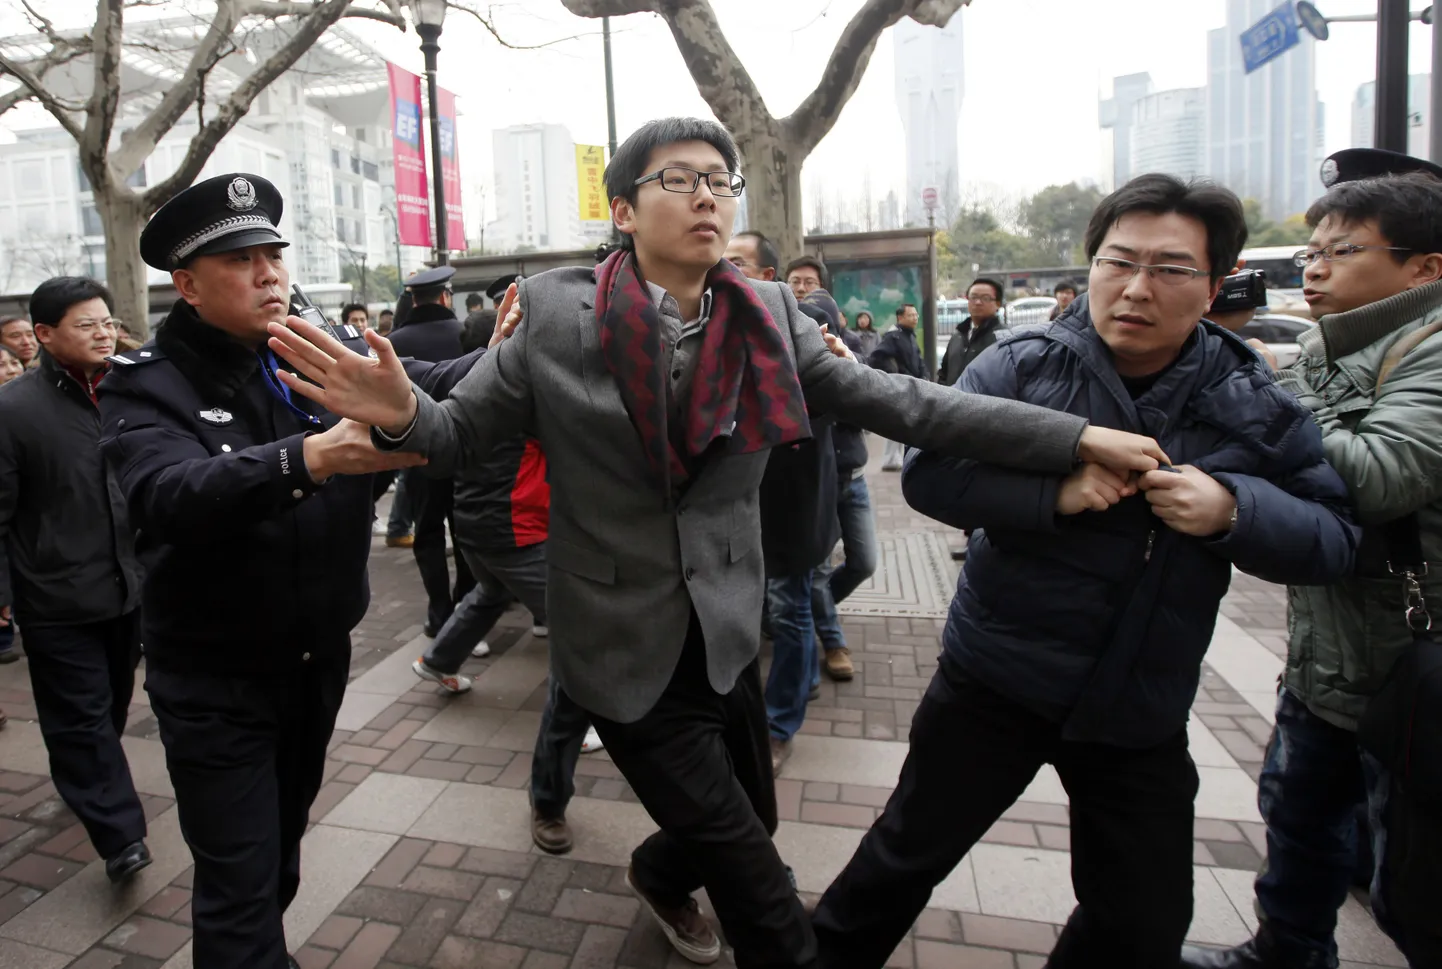 Hiina politsei inimõigusaktivisti arreteerimas